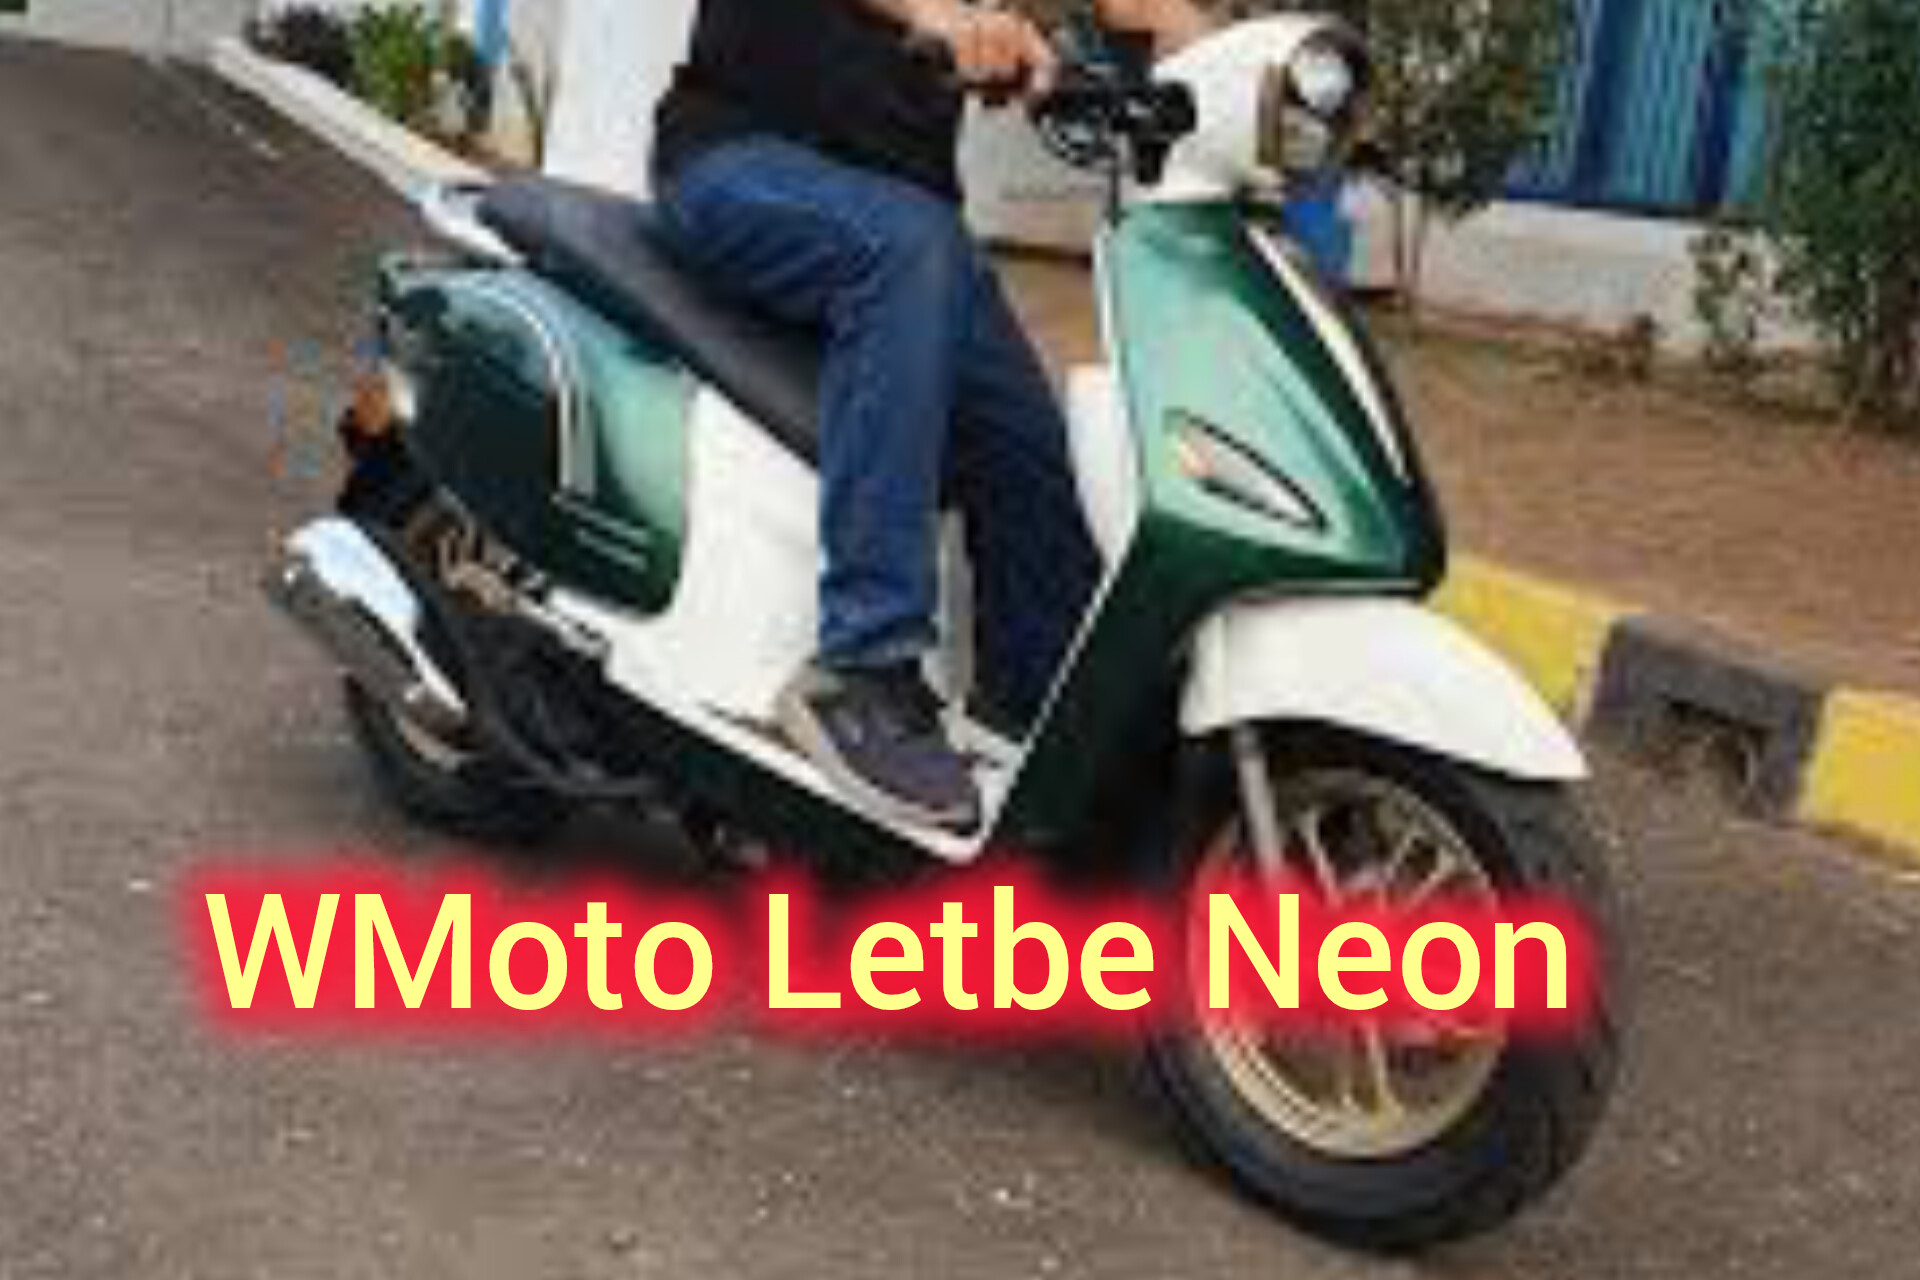 Motor Matic Wmoto Letbe Neon, Tampilan Unik Dibekali Layar Digital LED DRL dan Mesin 125cc. Harga Segini